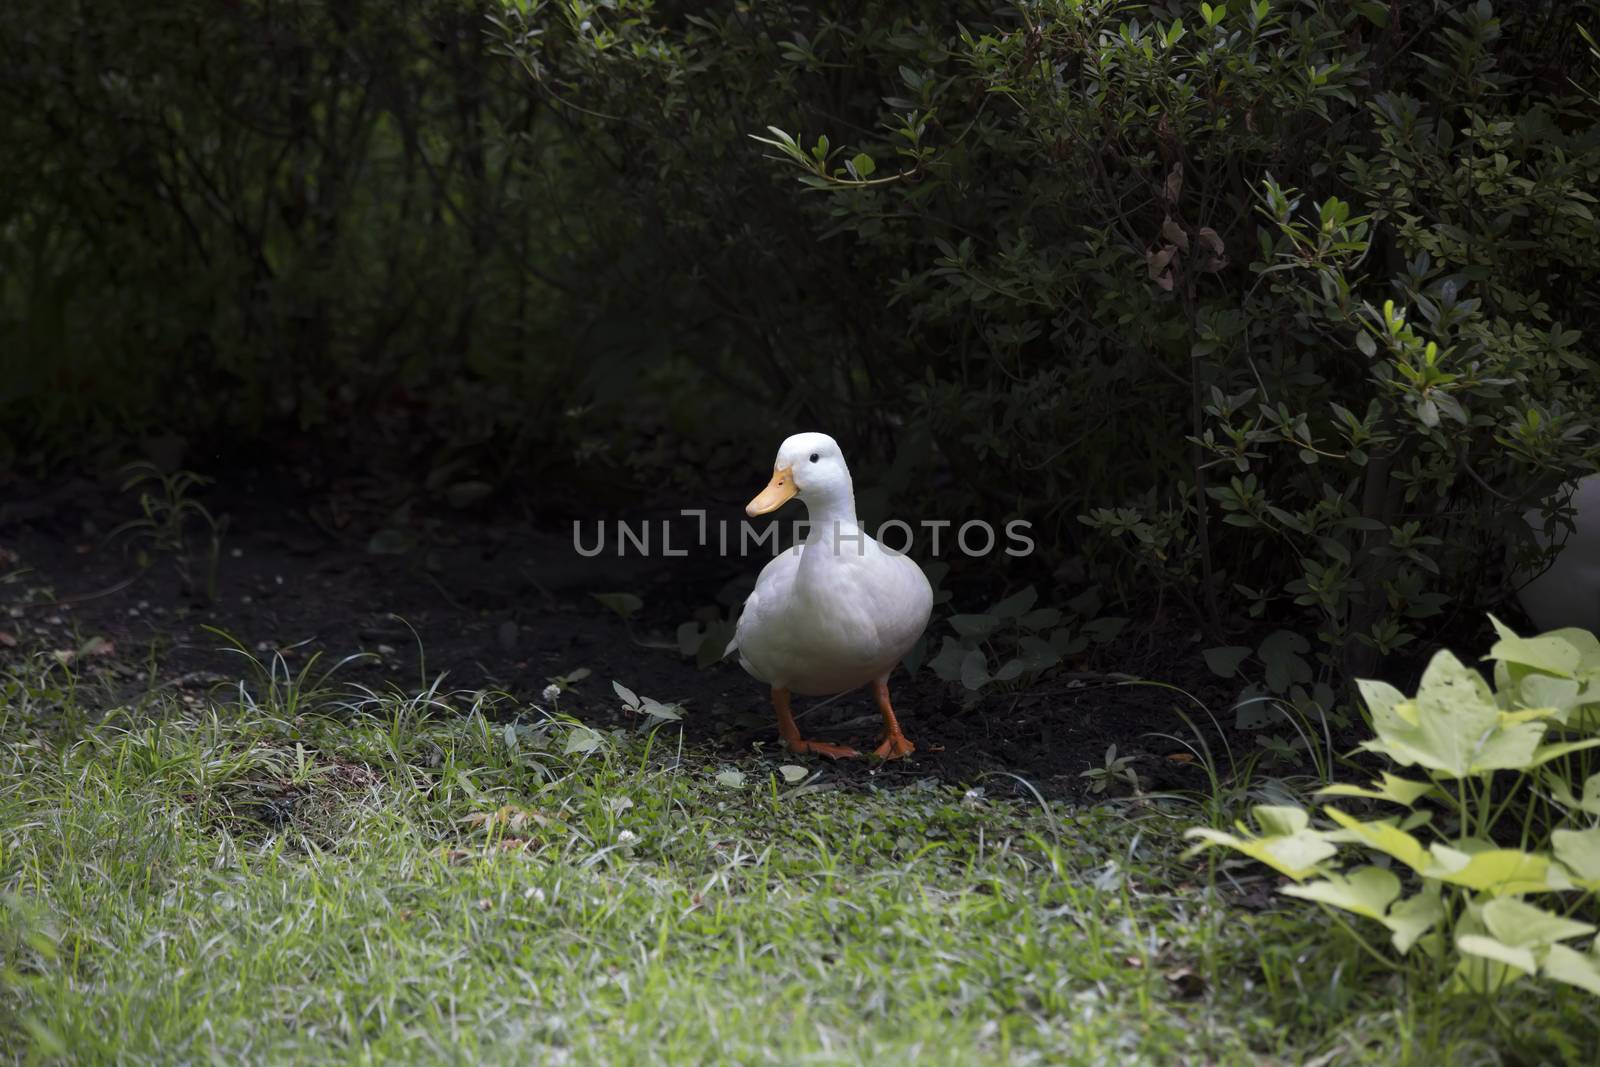 American Pekin duck in summer foliage